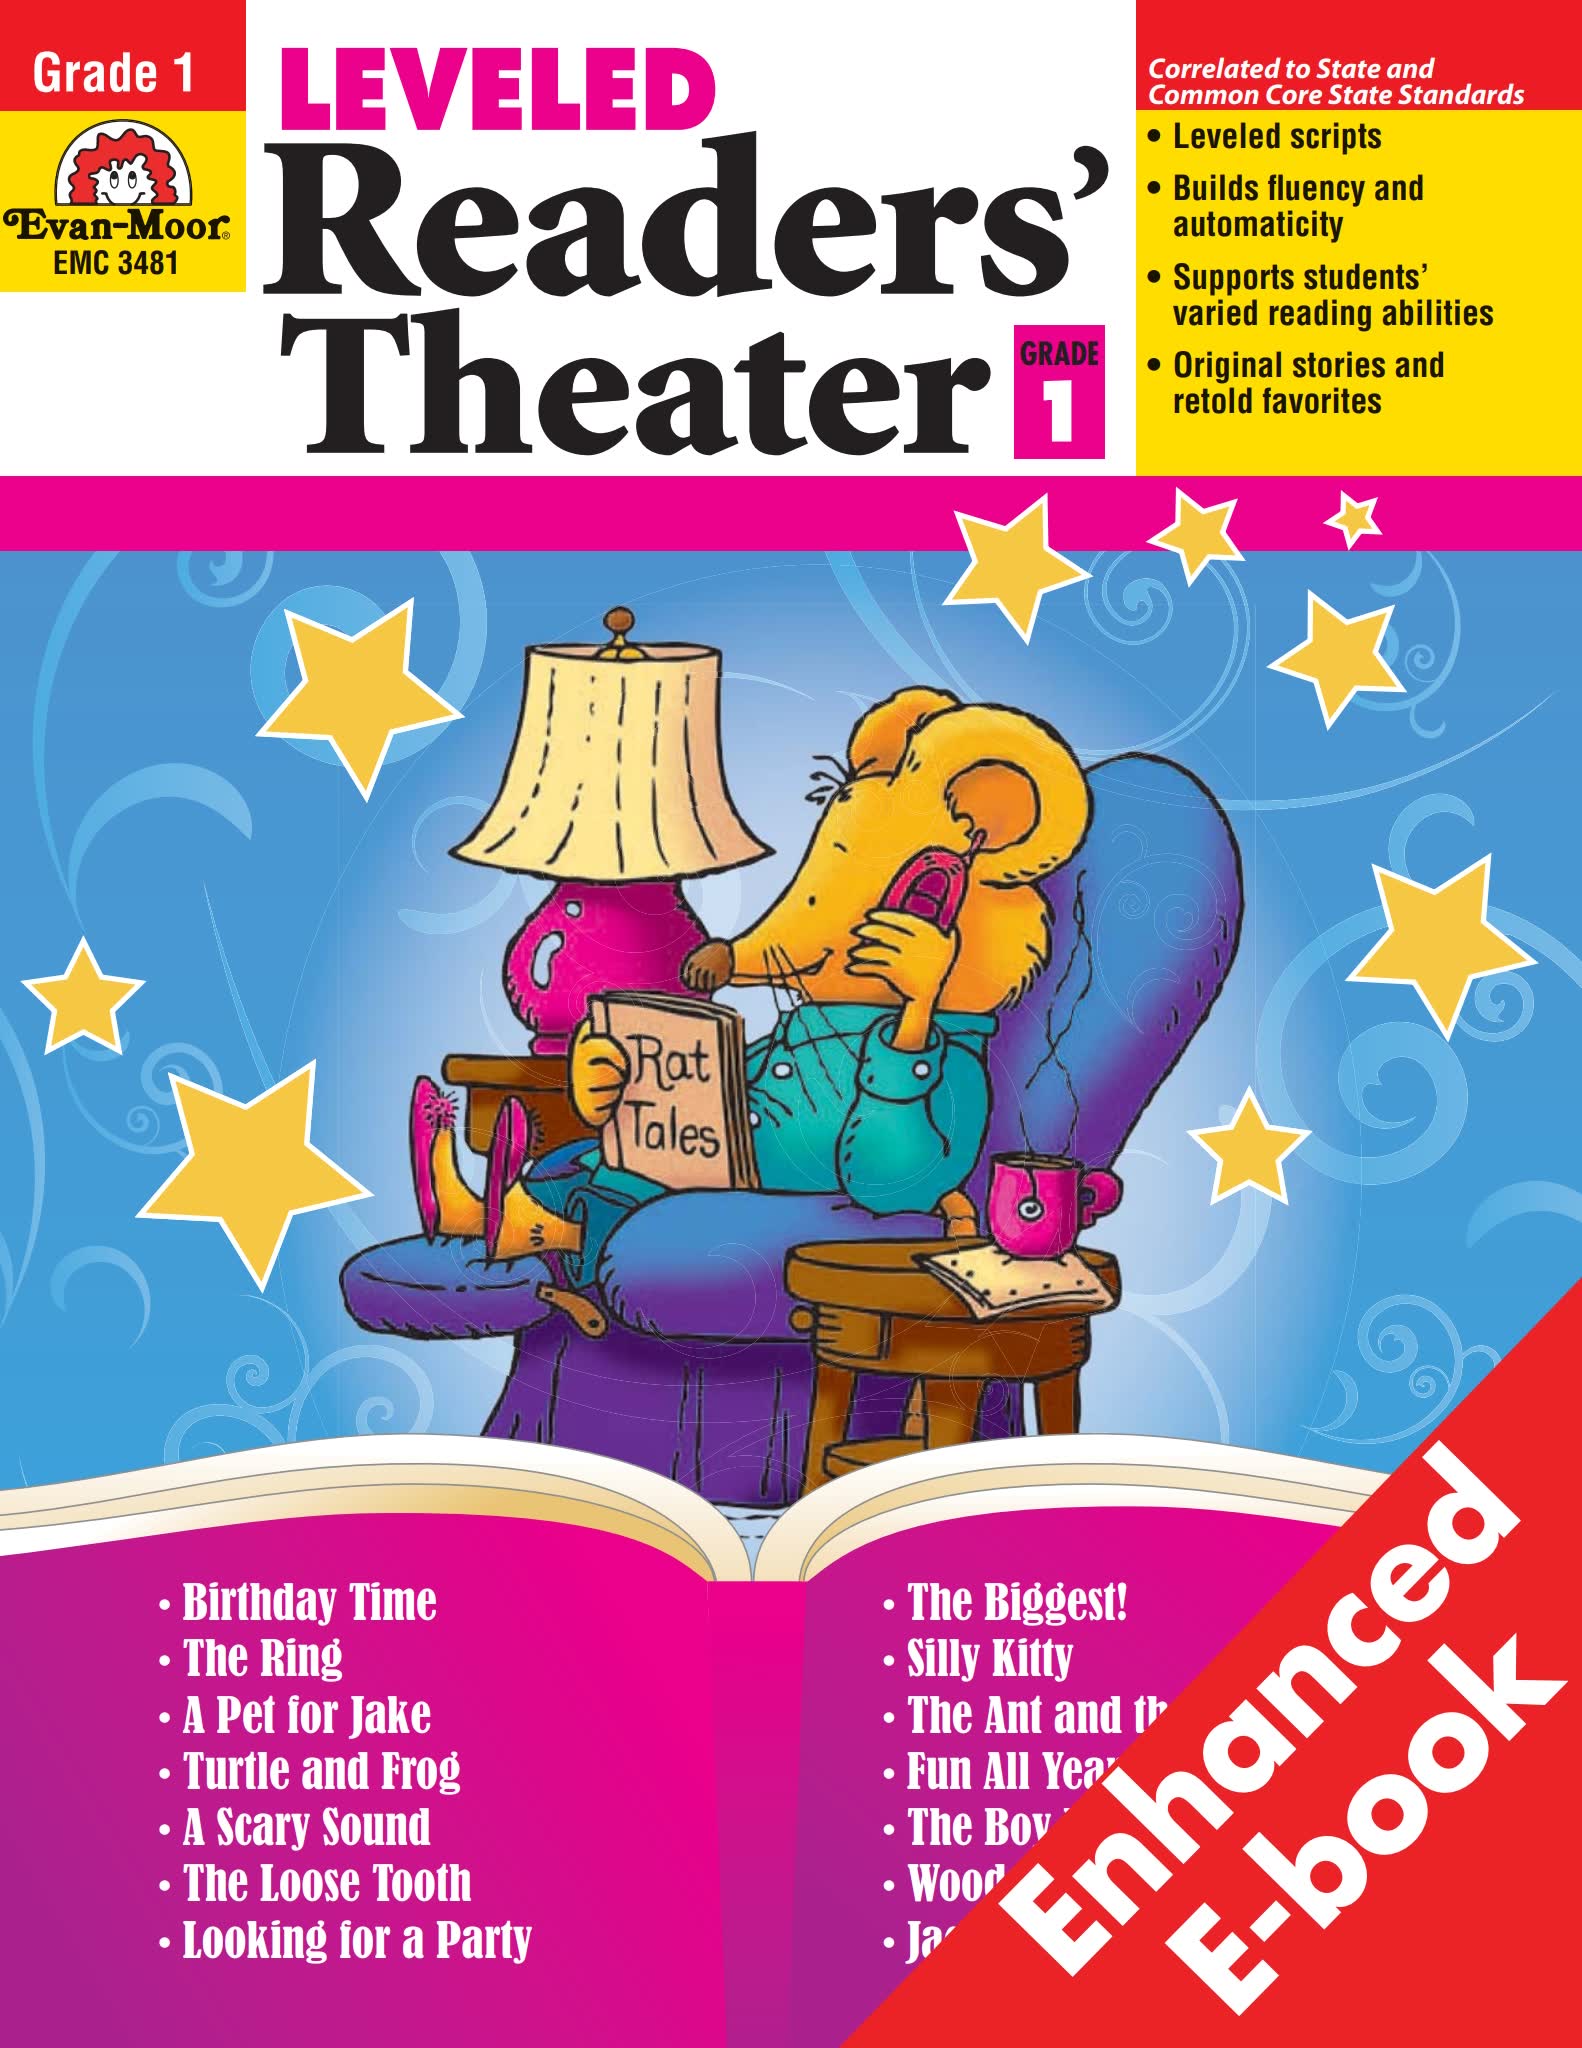 《Leveled-Readers-Theater》英文对话G1-G5剧本朗读教材PDF